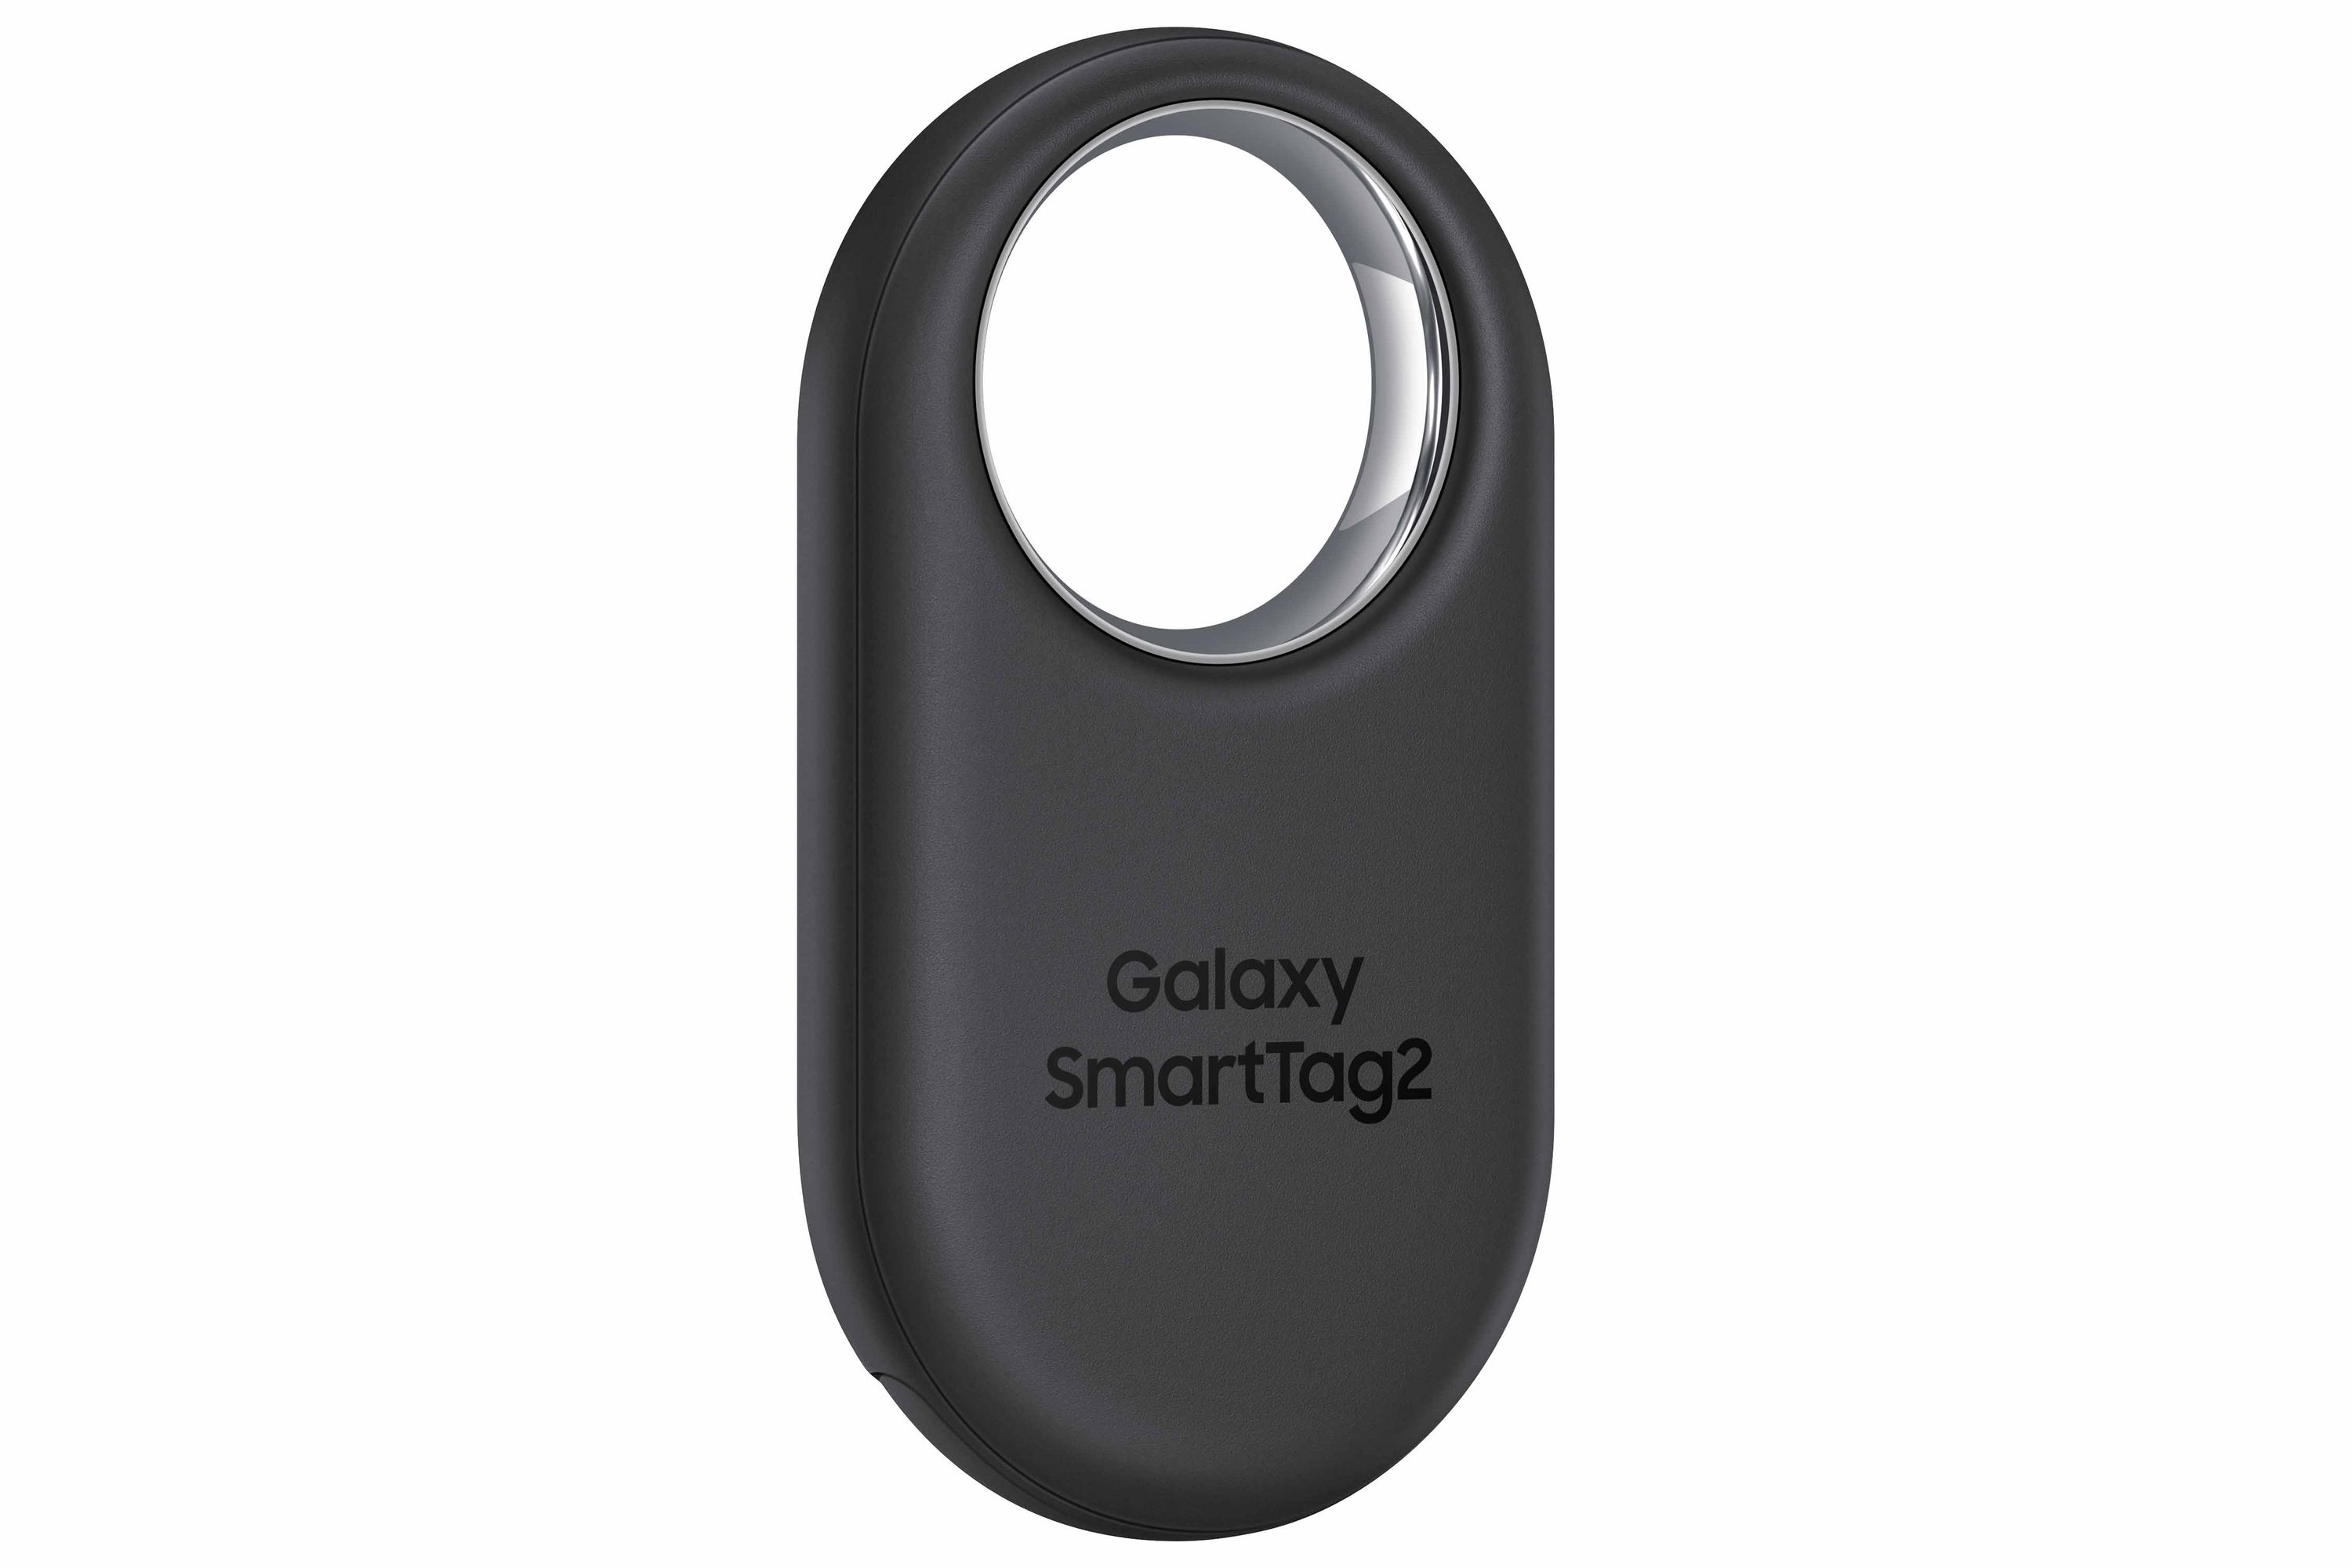 Lokalizator Galaxy SmartTag2 (źródło: Samsung)